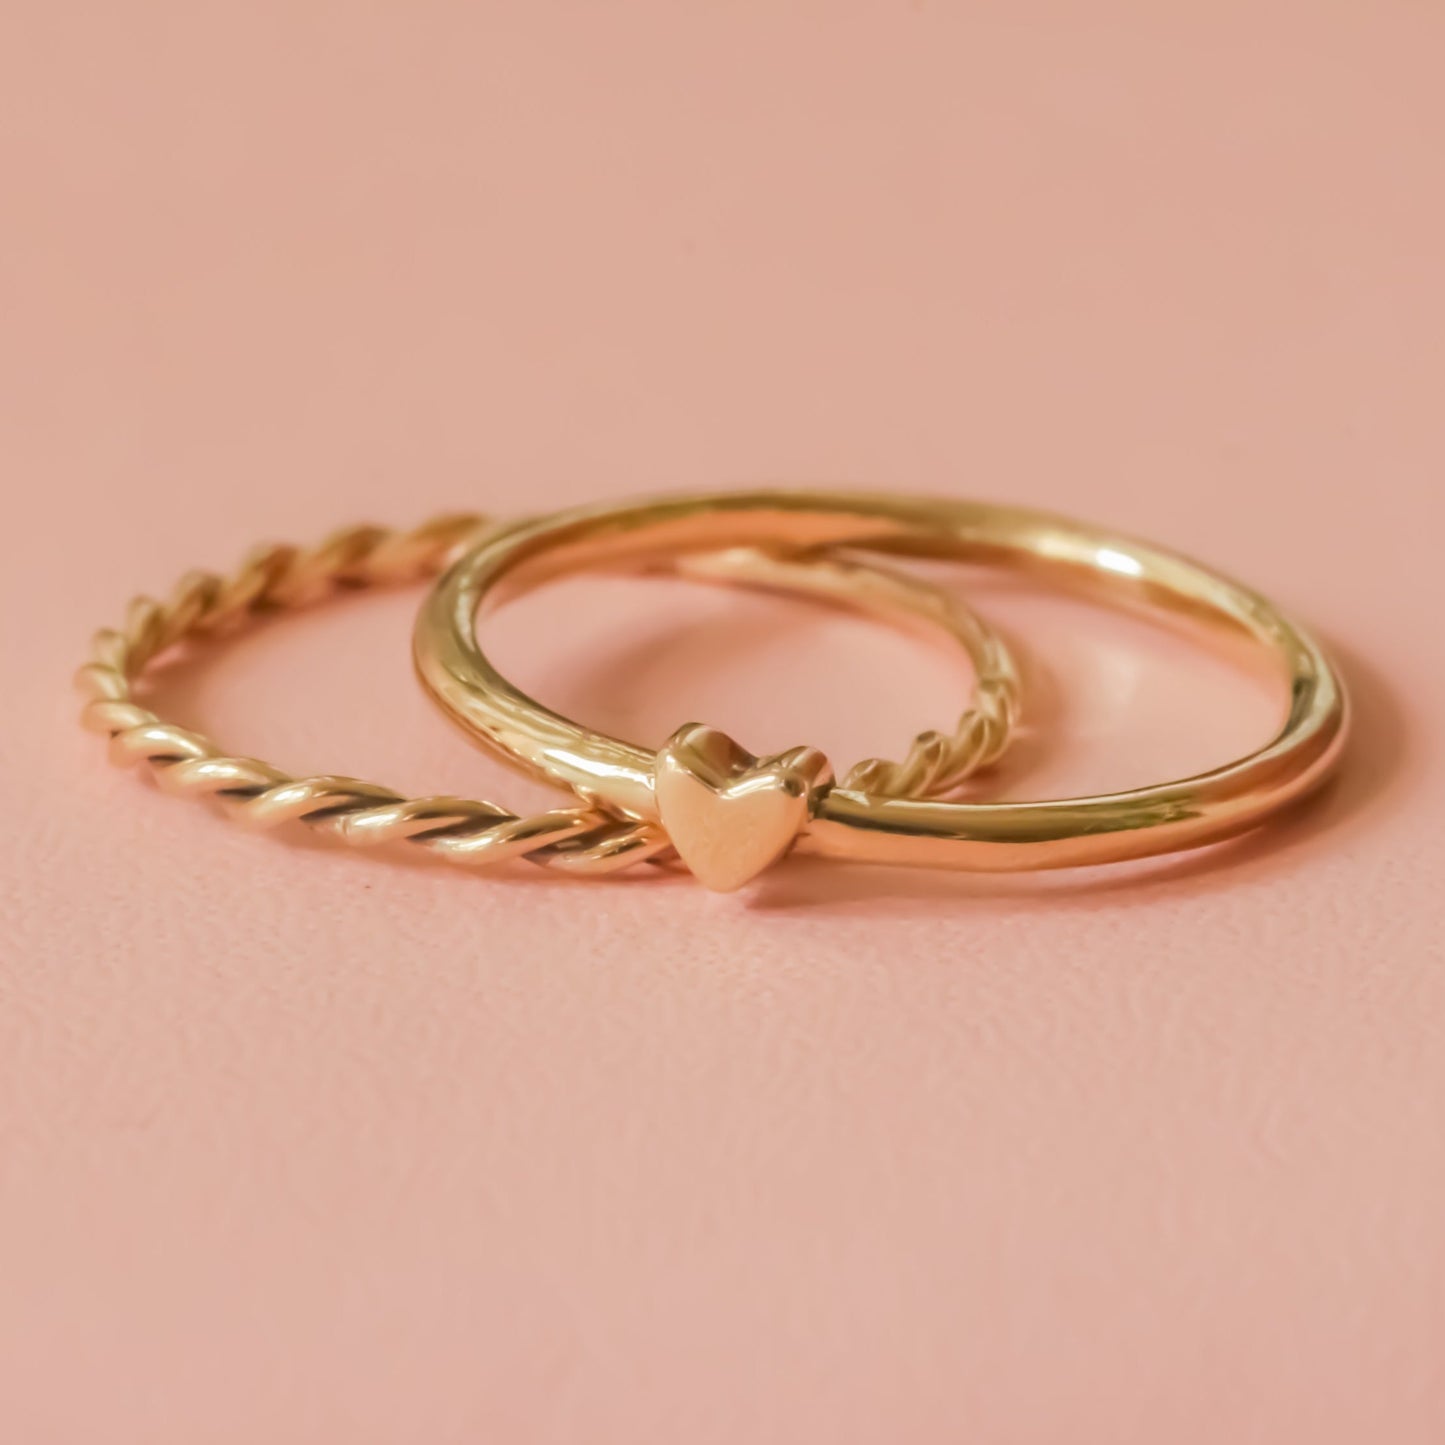 Tiny Heart ring 14k gold